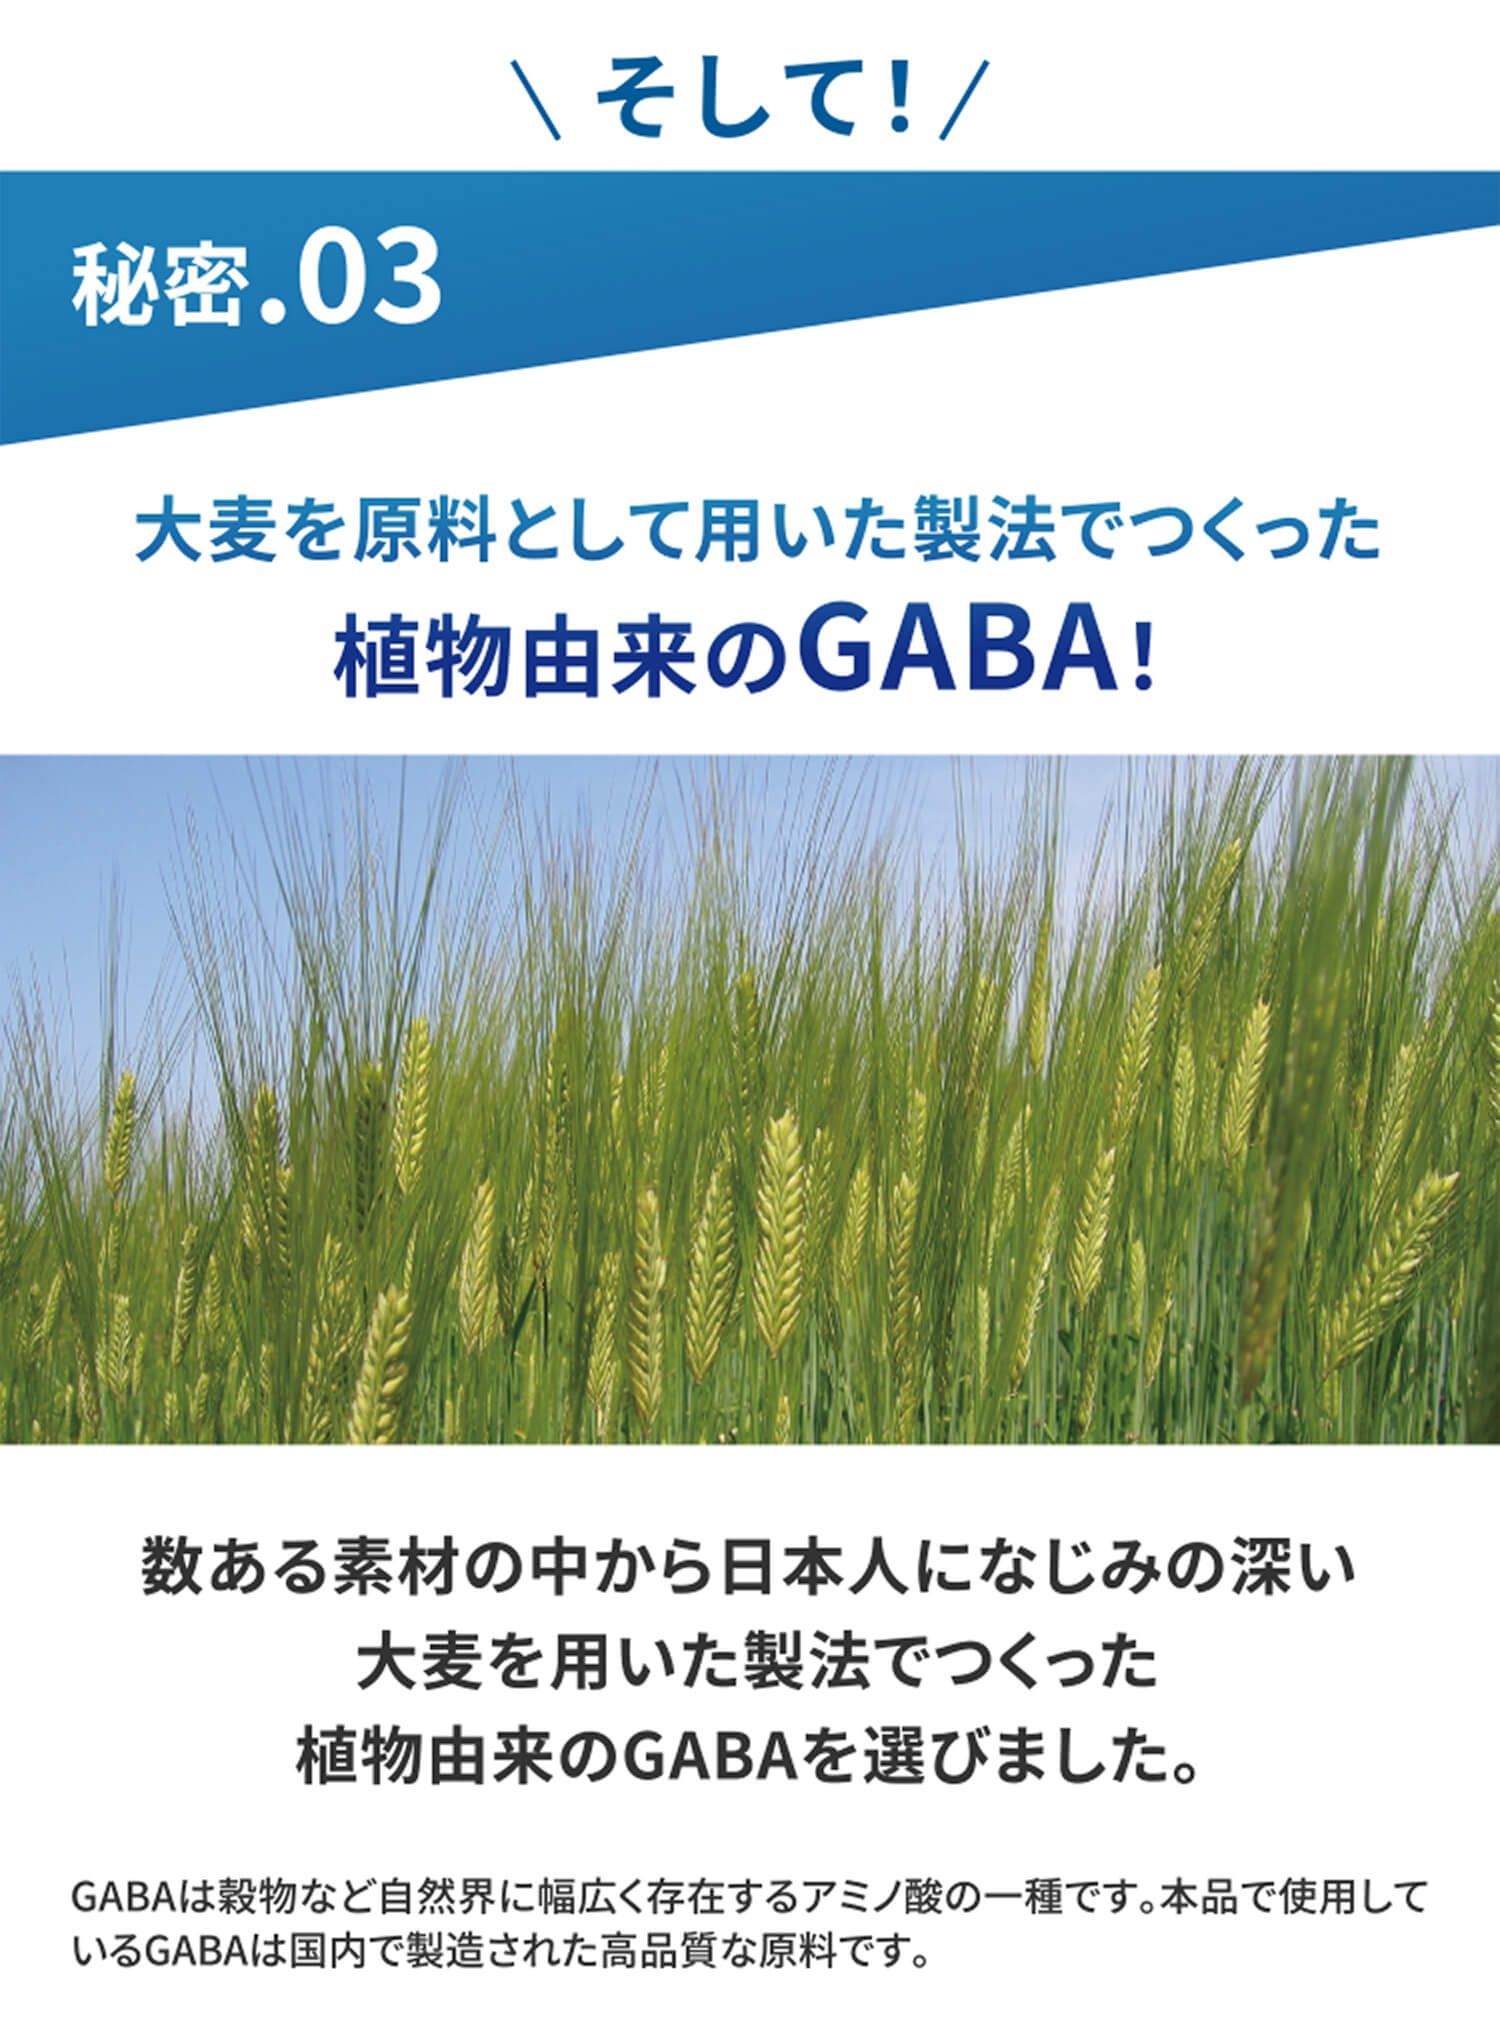 そして！秘密.03  大麦を原料として用いた製法でつくった植物由来のGABA！ 数ある素材の中から日本人になじみの深い大麦を用いた製法でつくった植物由来のGABAを選びました。GABAは穀物など自然界に幅広く存在するアミノ酸の一種です。本品で使用しているGABAは国内で製造された高品質な原料です。